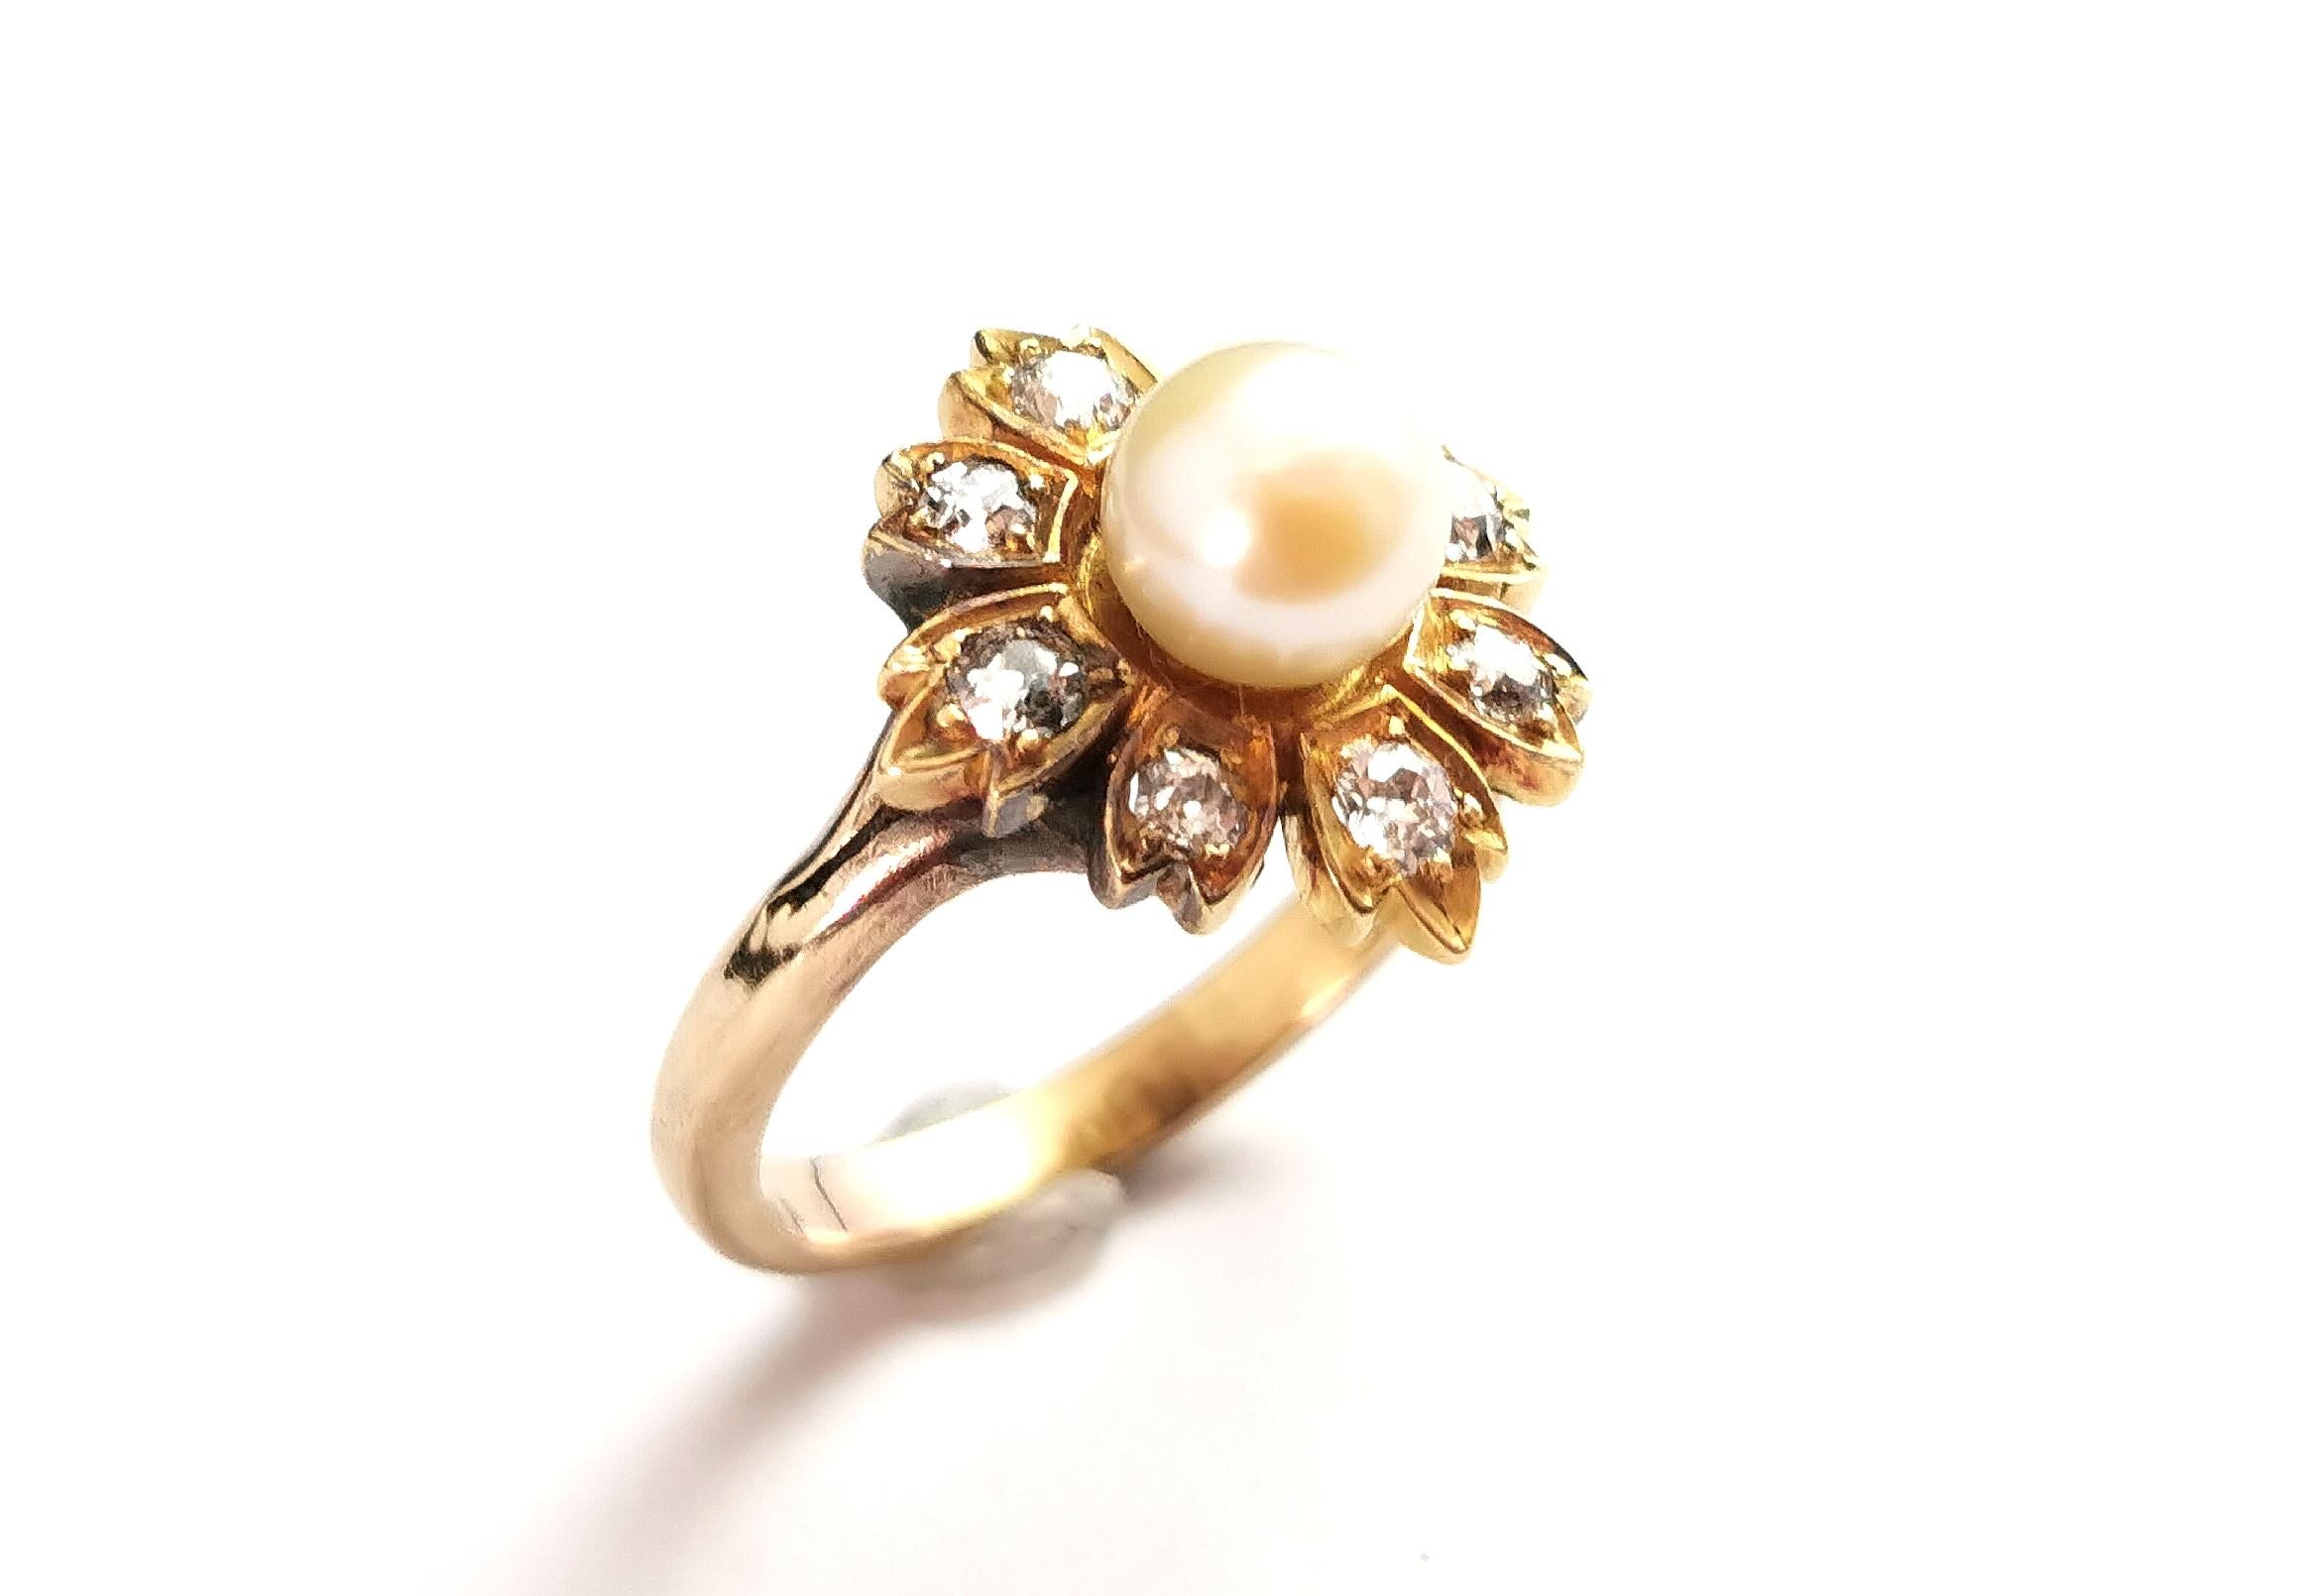 Superbe bague ancienne en diamant et perle.

Une riche fleur en or jaune 15 carats sertie de huit diamants étincelants de taille ancienne sur chaque pétale, soit environ 0,25 ct au total.

Il est orné d'une jolie perle crème au centre de la